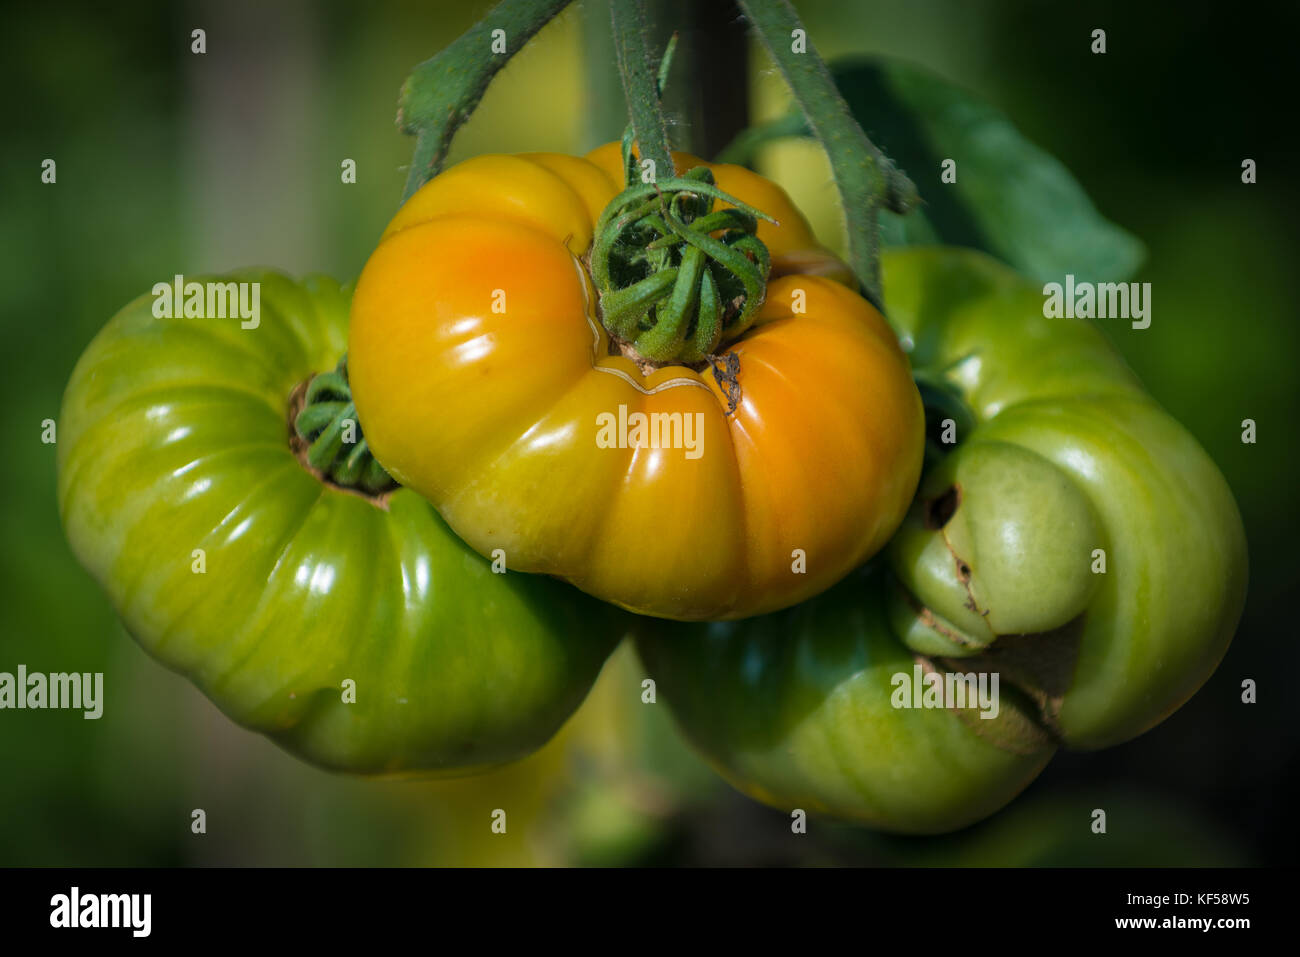 Tomatoes, fruit of the plant Solanum lycopersicum in Kew Botanic Gardens, London, United Kingdom Stock Photo